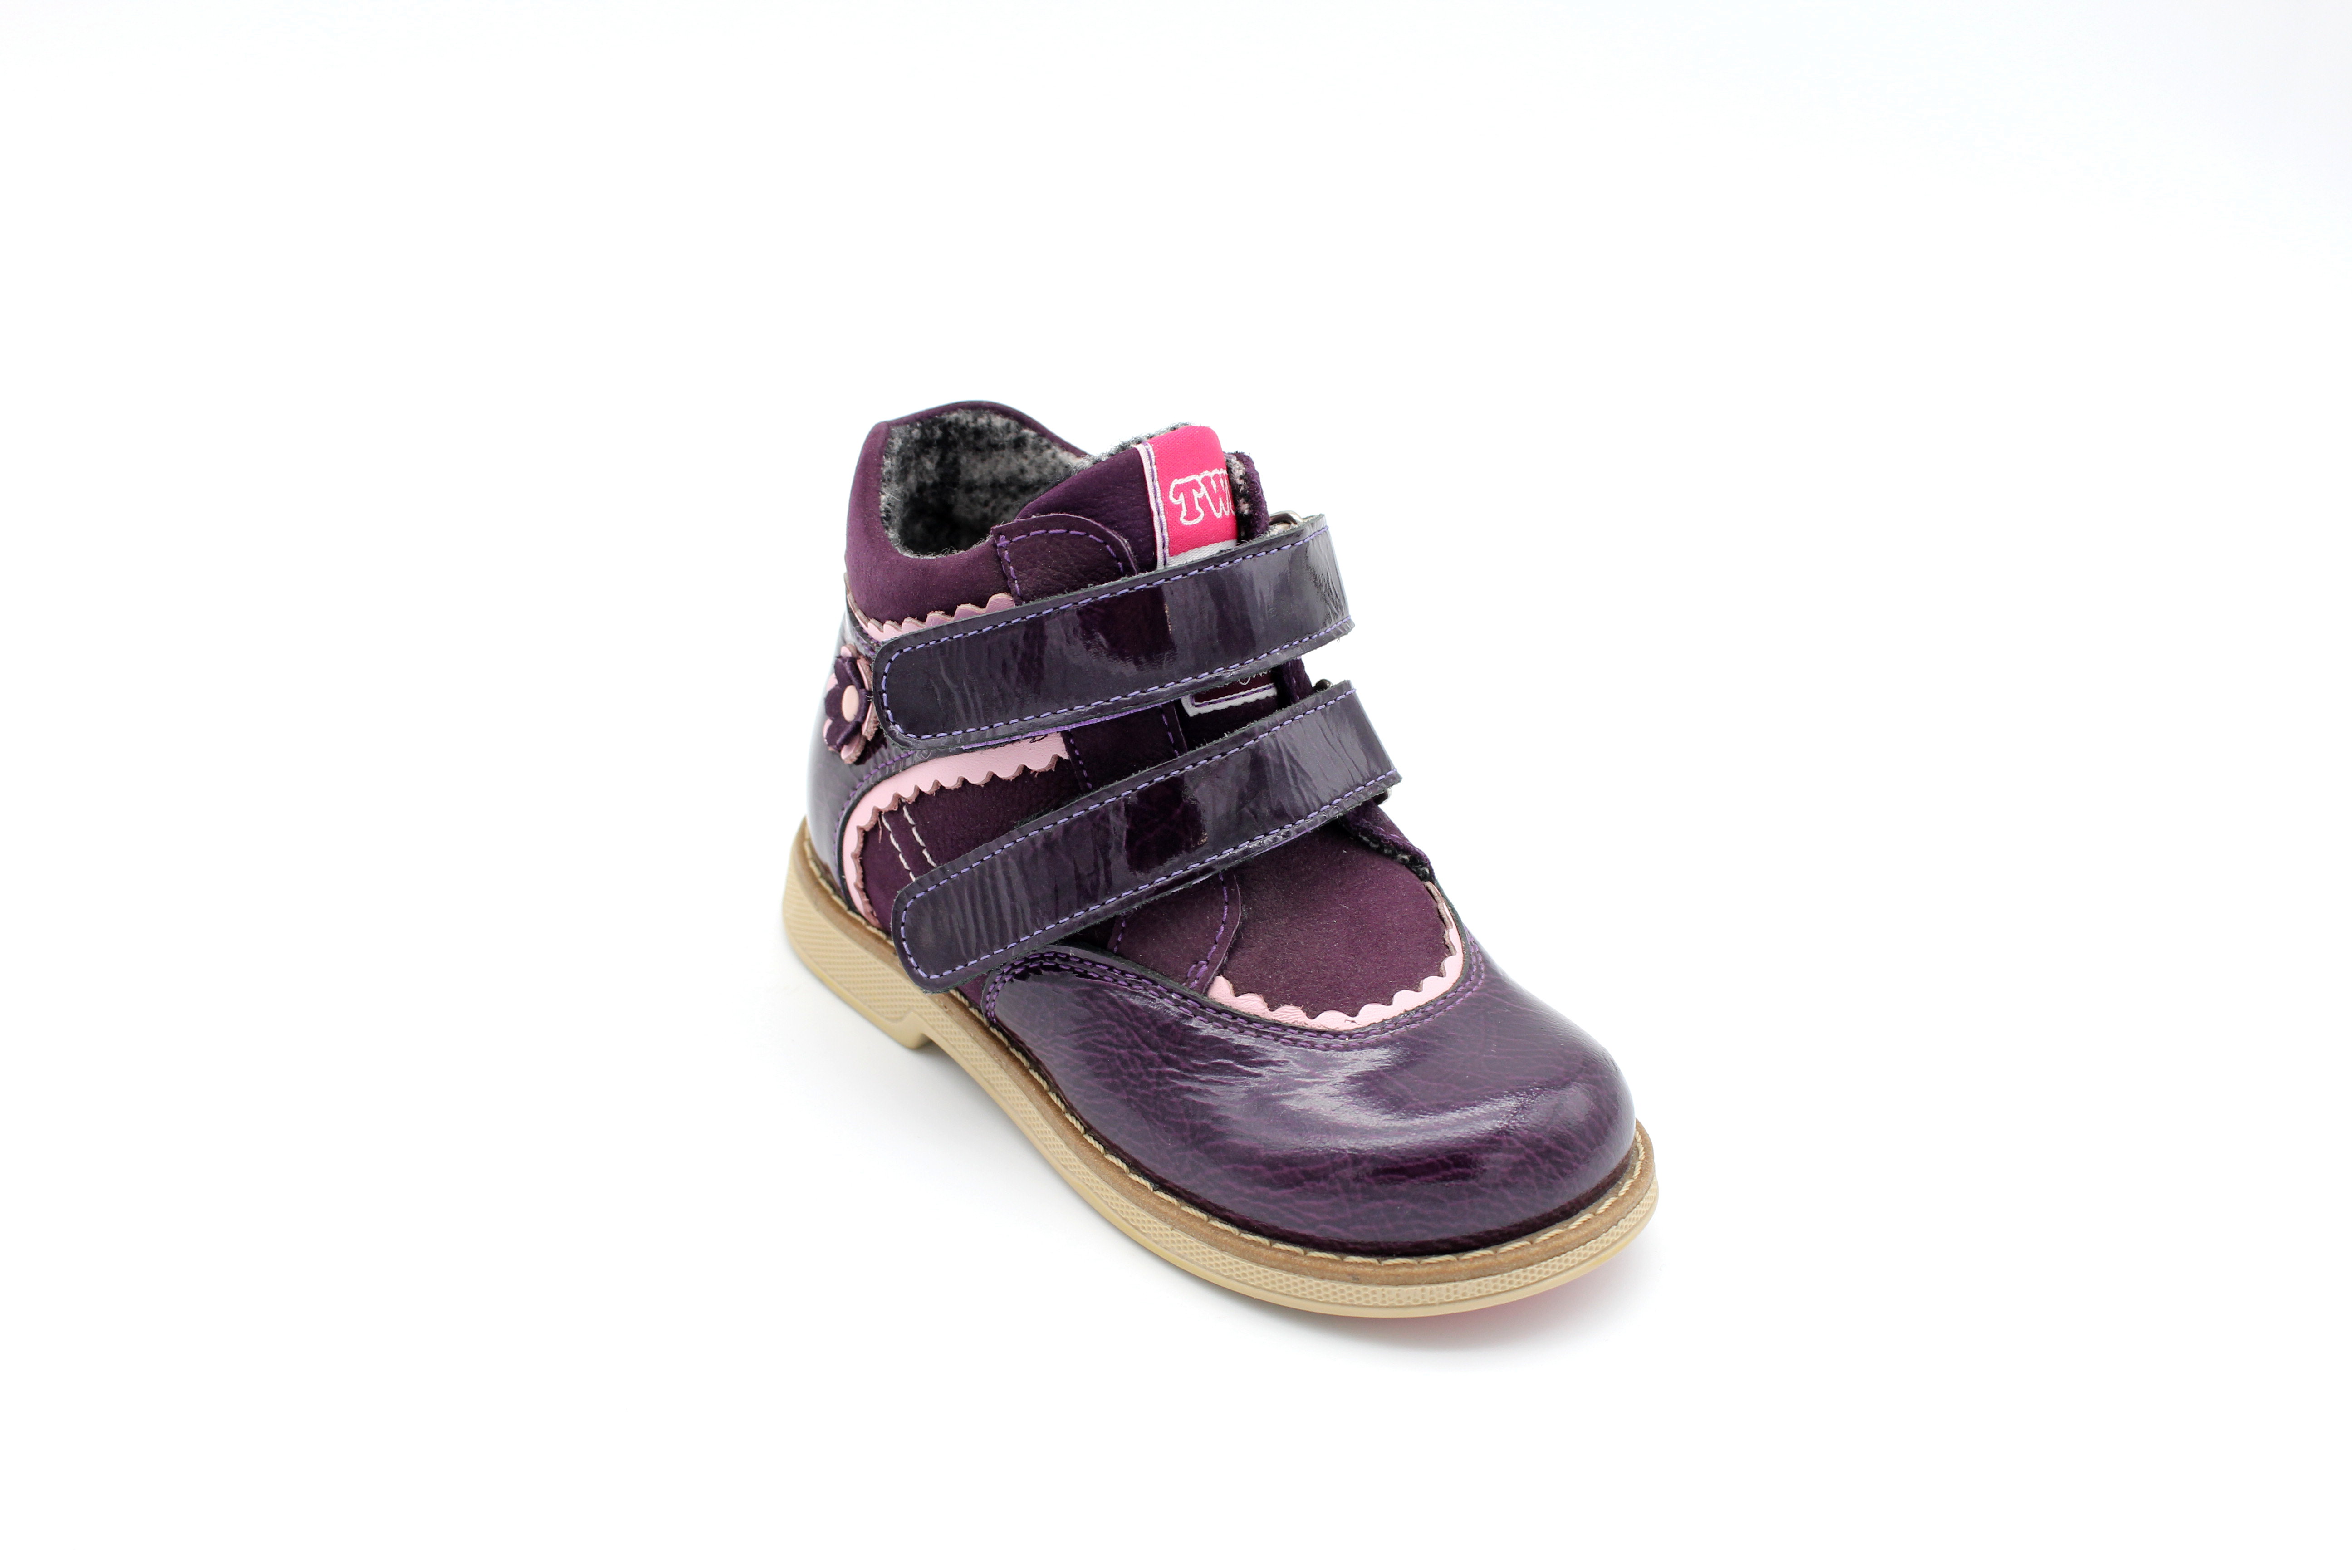 Ботинки весенние на байке обувь ортопедическая детская на девочку TW 319